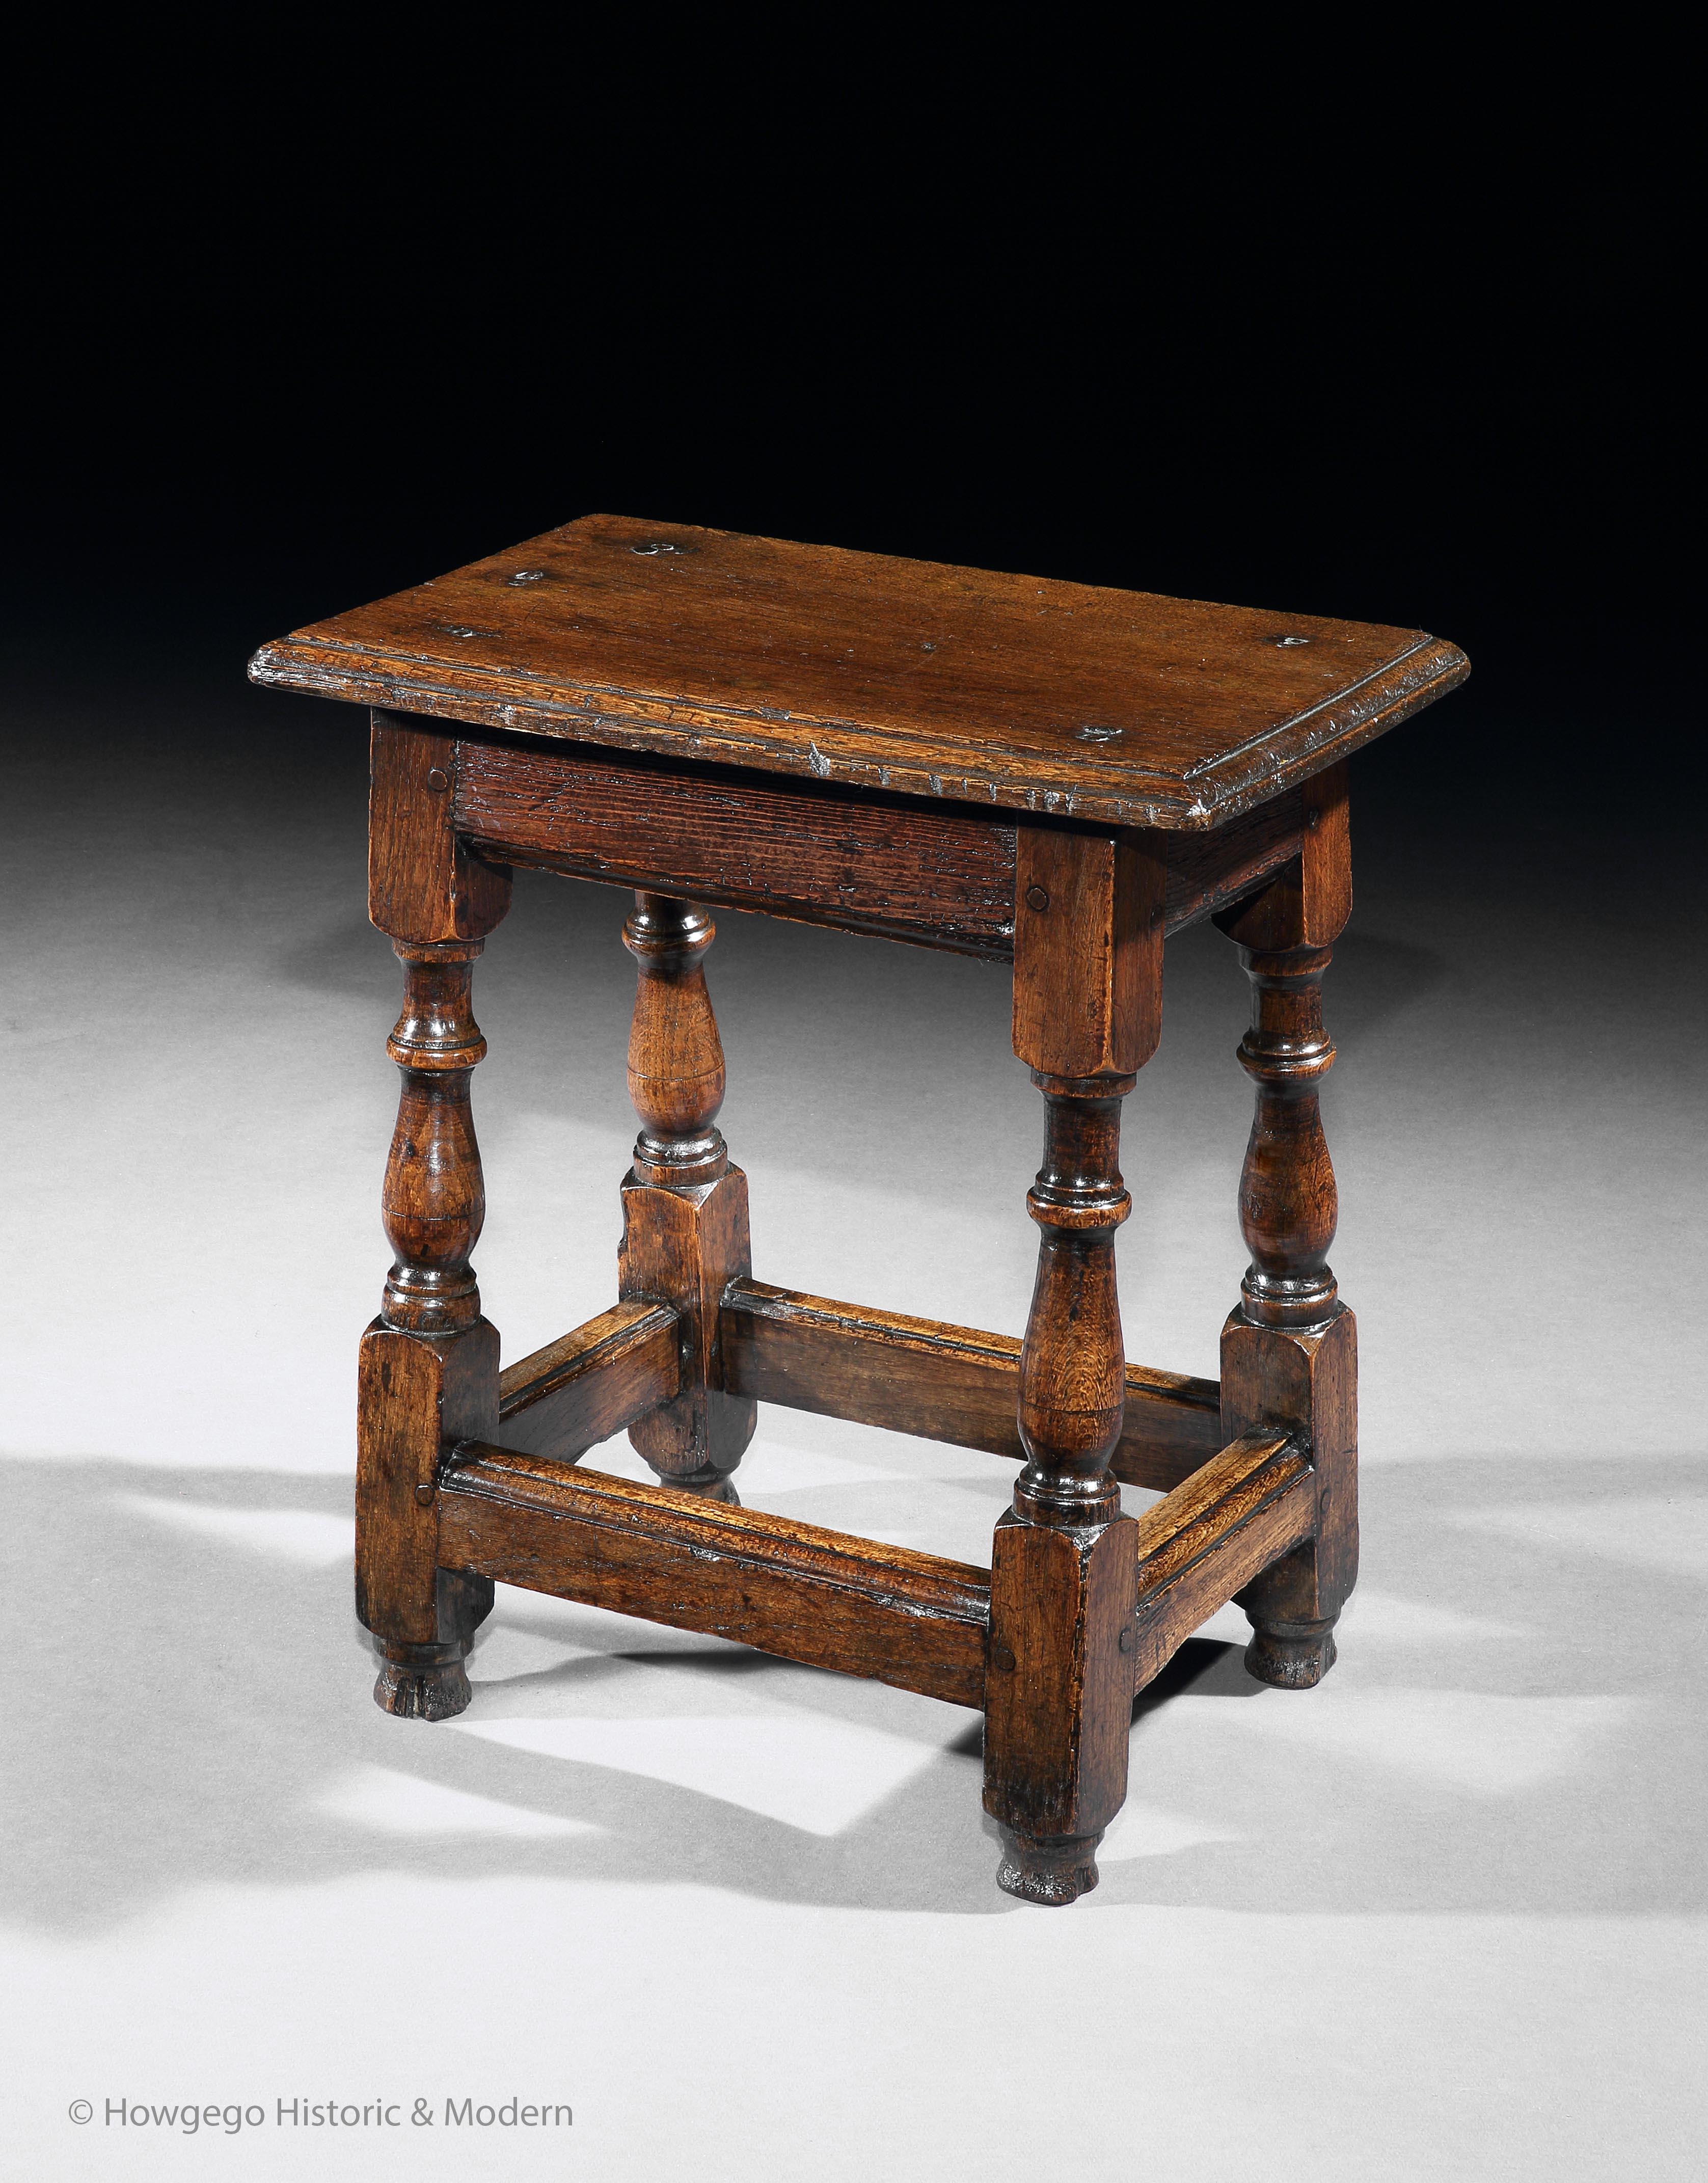 Charaktervoller, naiver Charme
Perfekte Höhe für den gelegentlichen Tisch neben dem Sessel oder Sofa für ein Getränk und Knabbereien

Ein Eichenholzhocker aus der Mitte des 17. Jahrhunderts. Die Bohlenplatte mit einer geformten Kante. Zwei Sätze